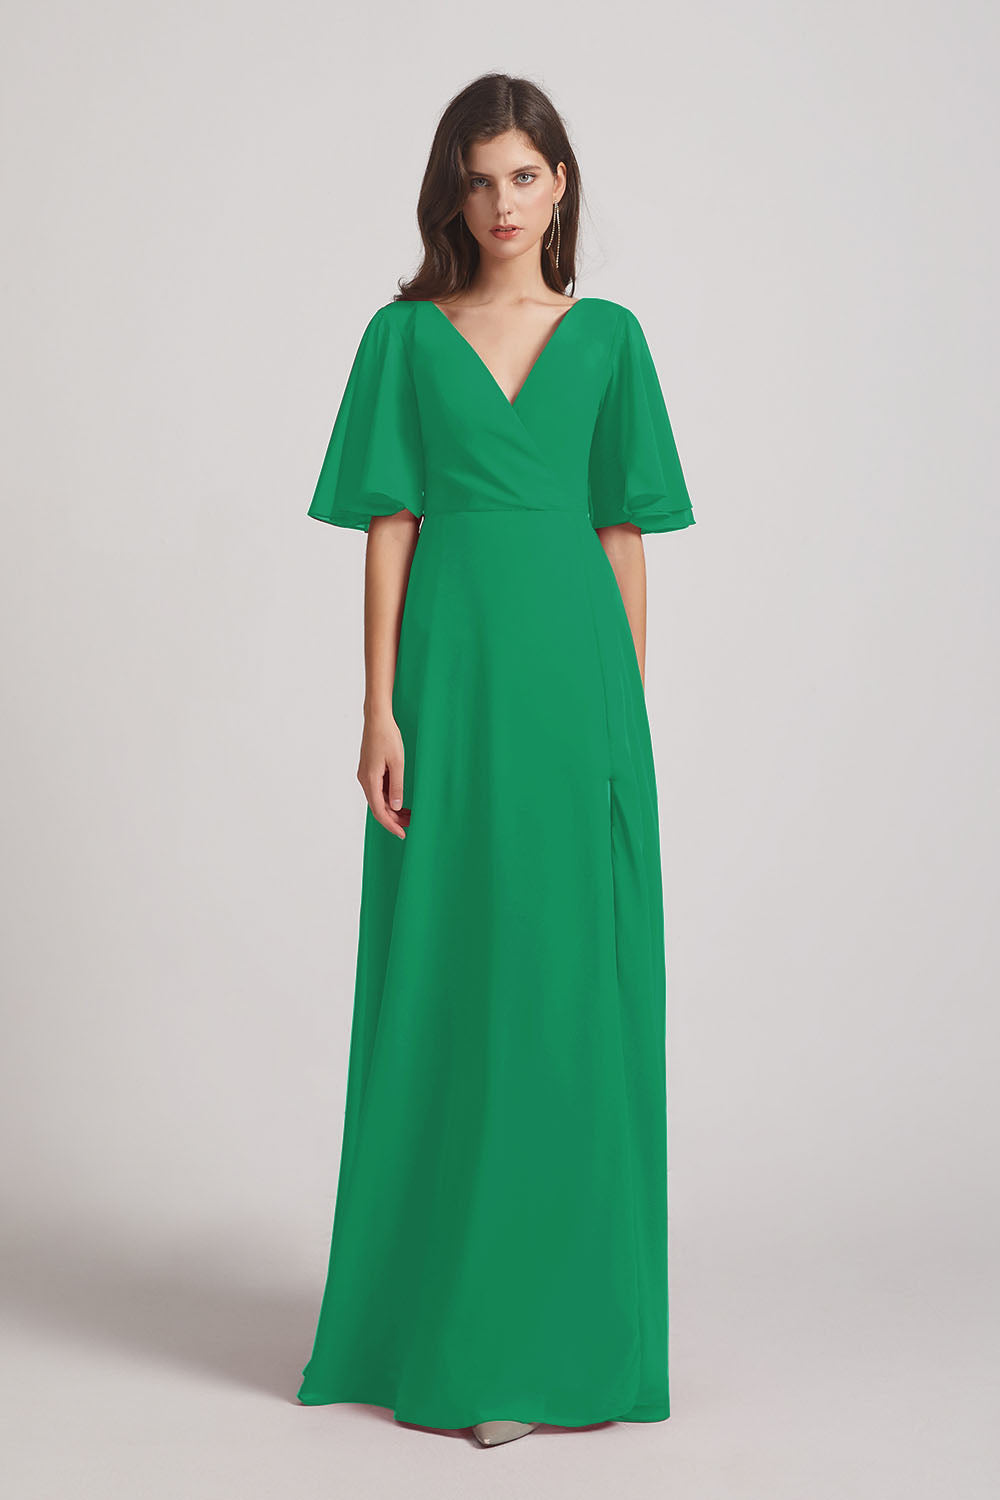 Alfa Bridal Shamrock Green V-Neck Chiffon Side Slit Bridesmaid Dresses With Flutter Half Sleeves (AF0056)